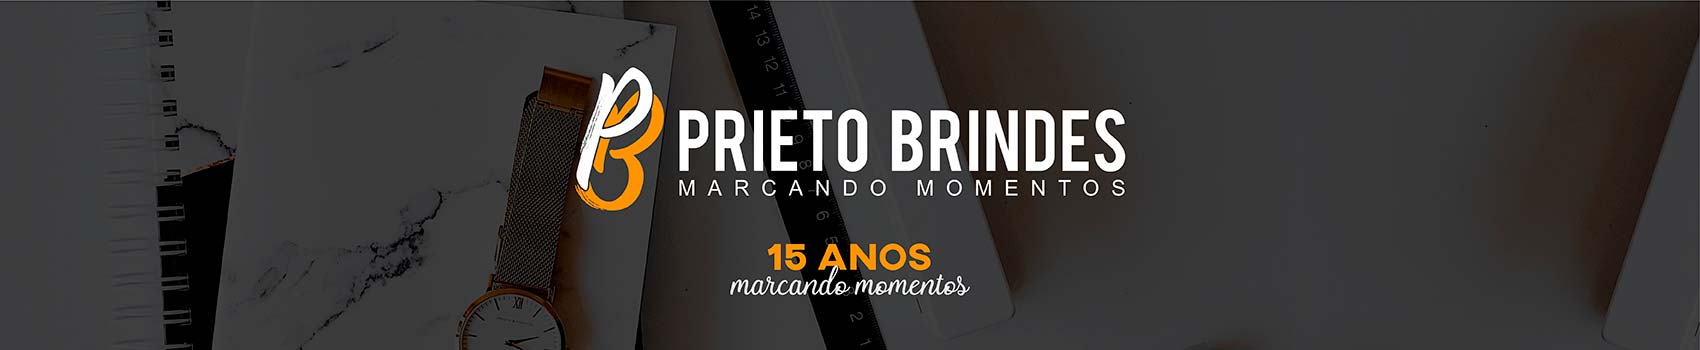 Prieto Brindes e Presentes Corporativos